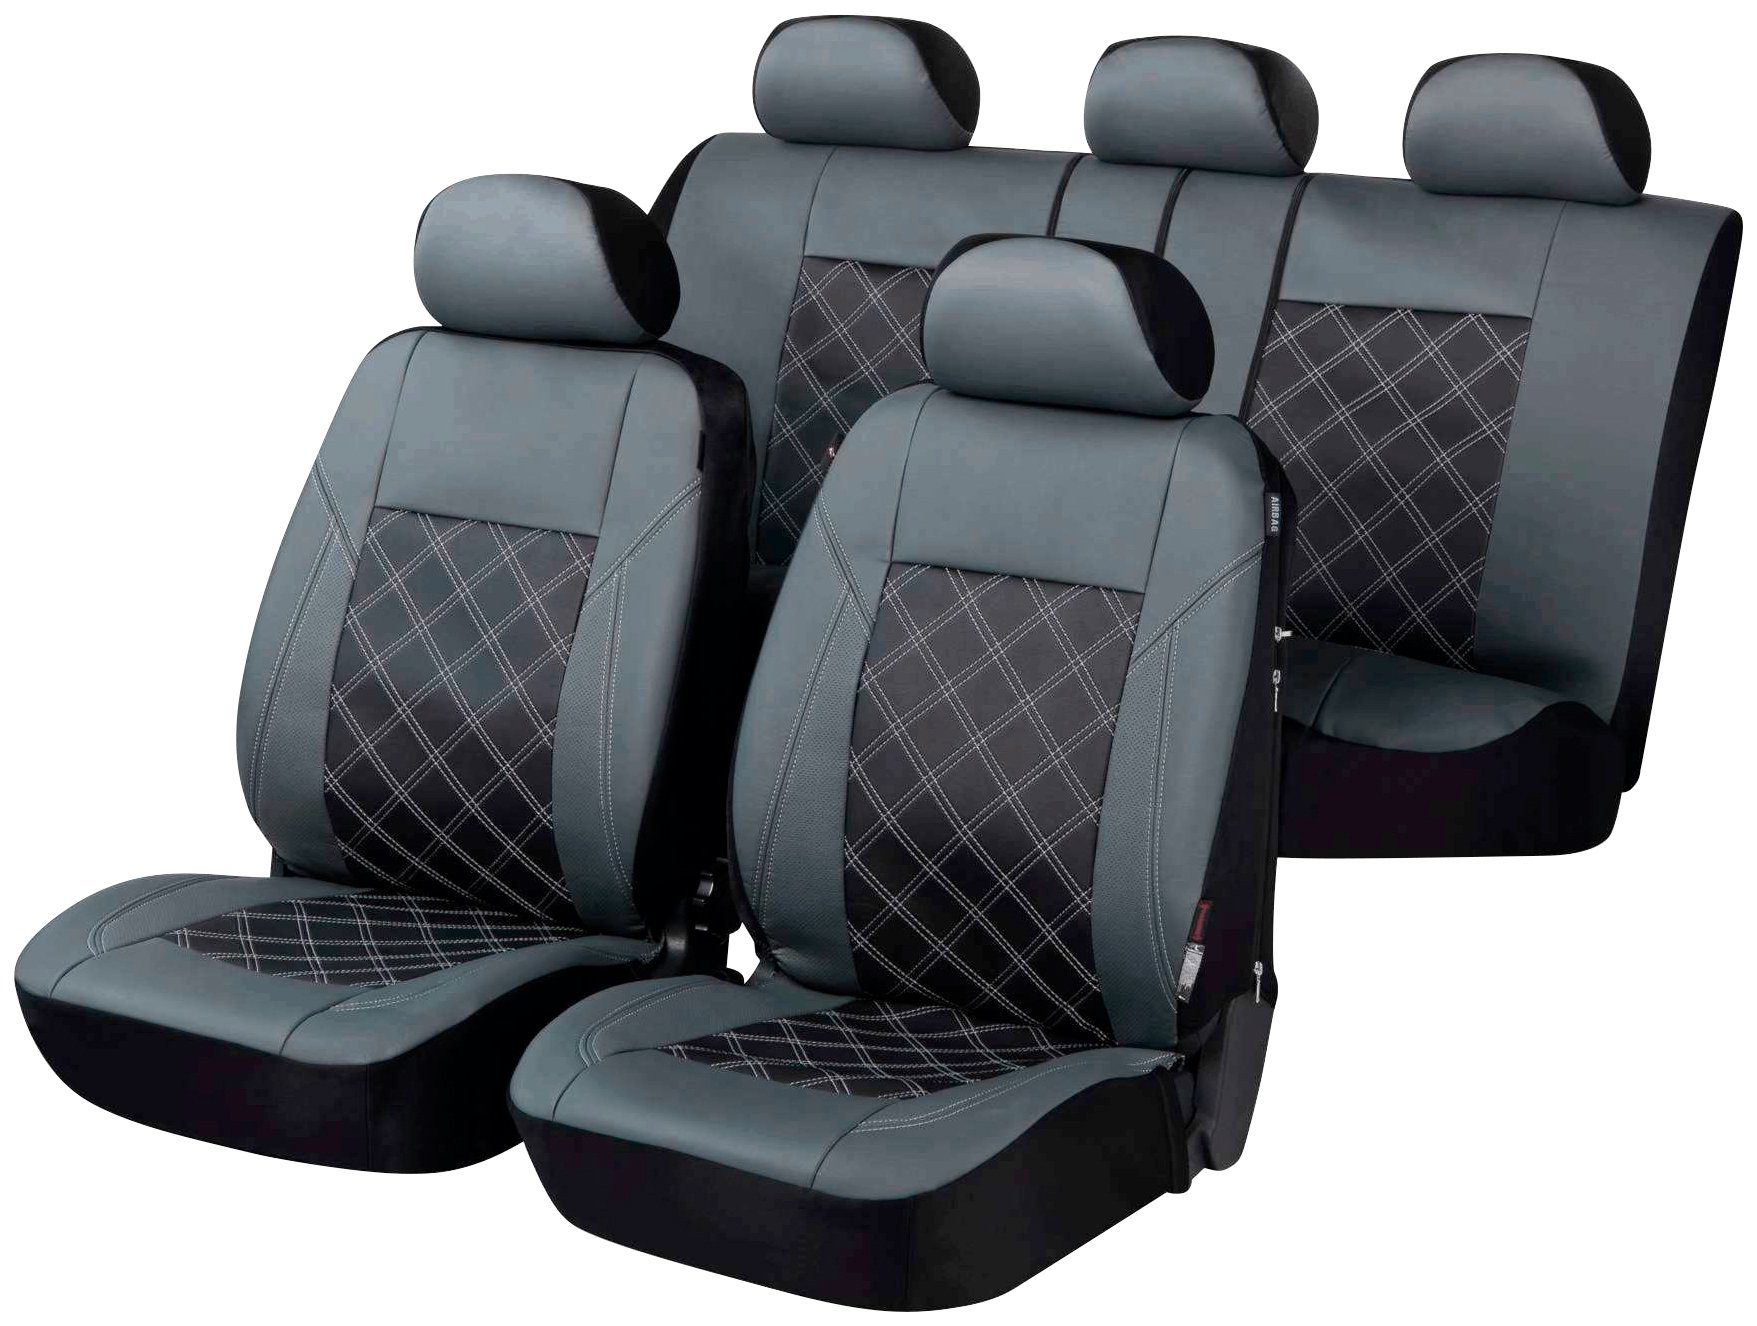 Passform Sitzbezug Bari für Audi A4 Avant (8K5, B8) 11/2007-12/2015, 2  Einzelsitzbezüge für Sportsitze, Passform Sitzbezug Bari für Audi A4 Avant  (8K5, B8) 11/2007-12/2015, 2 Einzelsitzbezüge für Sportsitze